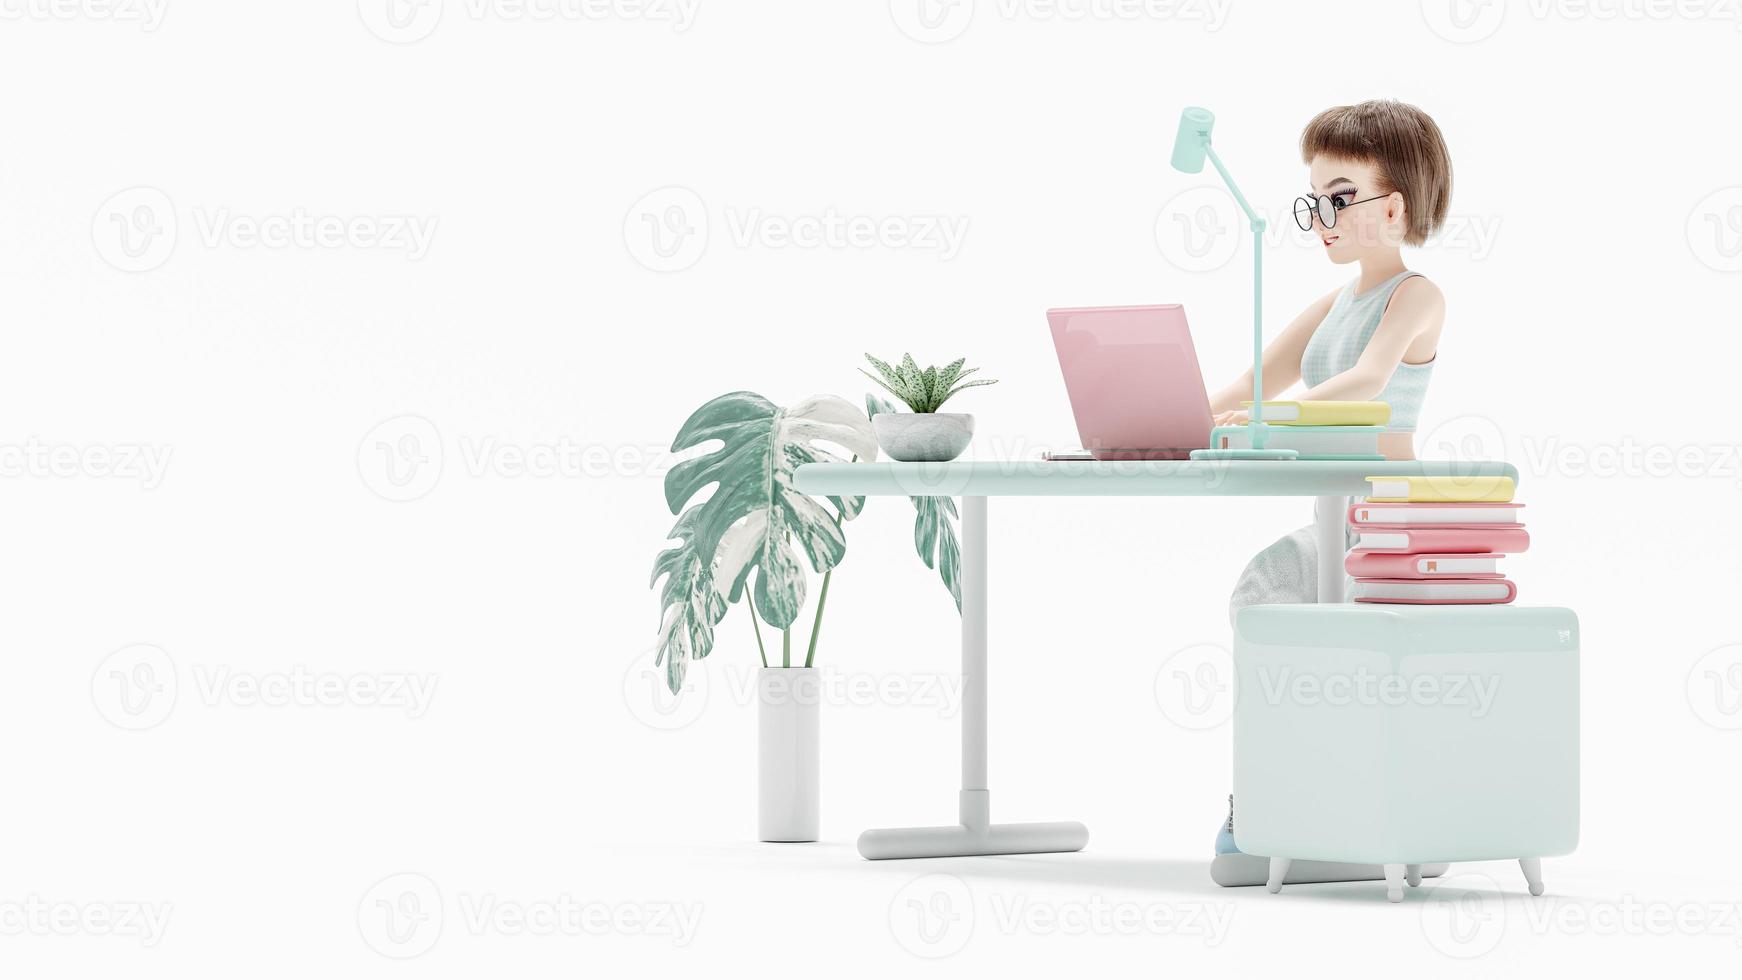 mujer joven feliz sentada en la silla. disfruta estudiando, aprendiendo e investigando información de la computadora. la computadora portátil rosa se coloca en el escritorio. personaje de dibujos animados, representación 3d foto